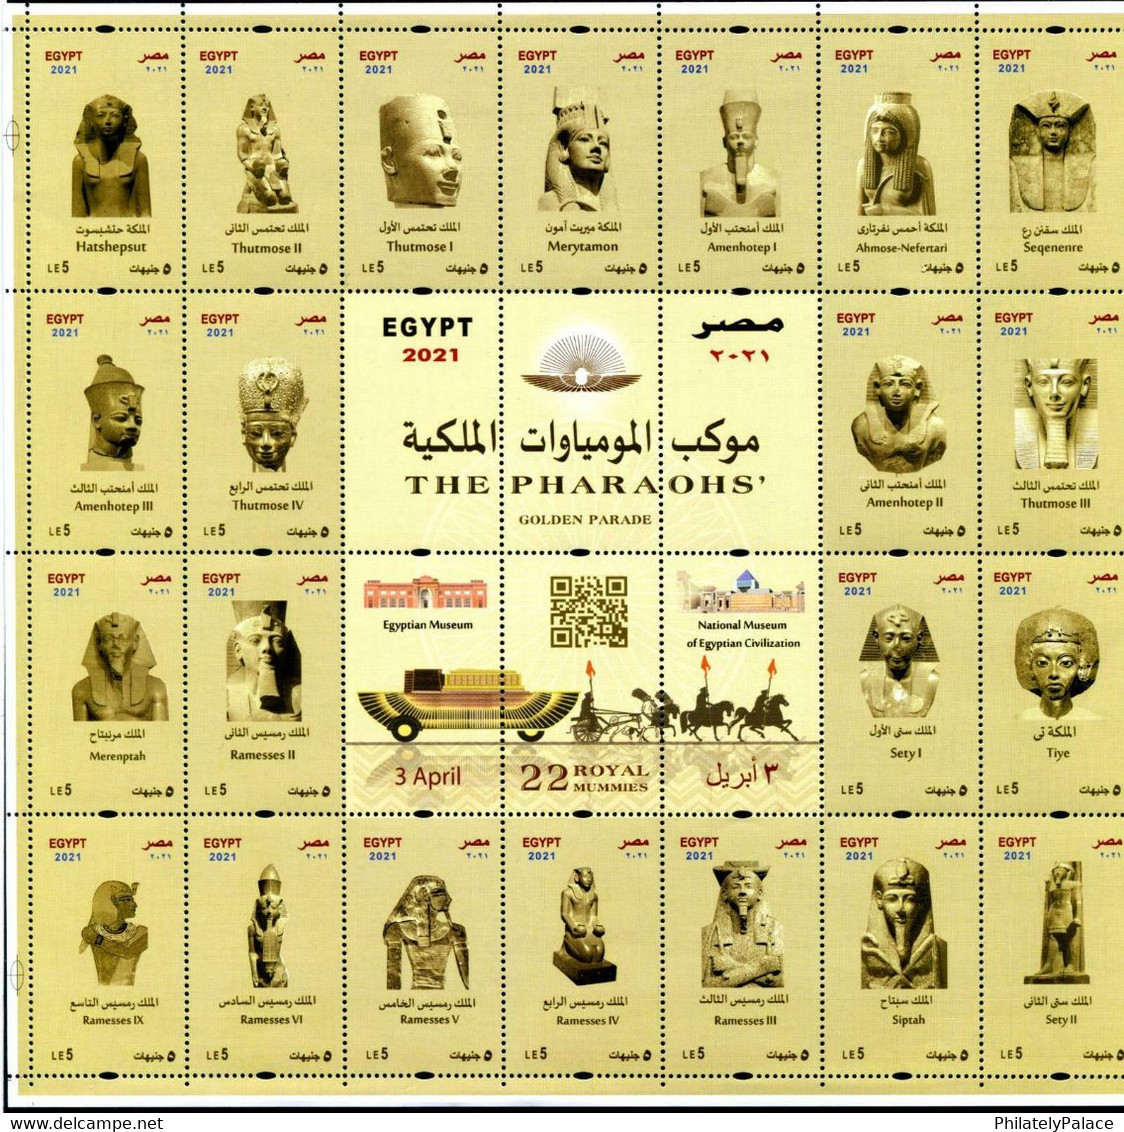 EGYPT 2021 THE PHARAOHS' GOLDEN PARADE 22 ROYAL MUMMIES KING & QUEENS SHEET MINT MNH (**) - Gebraucht